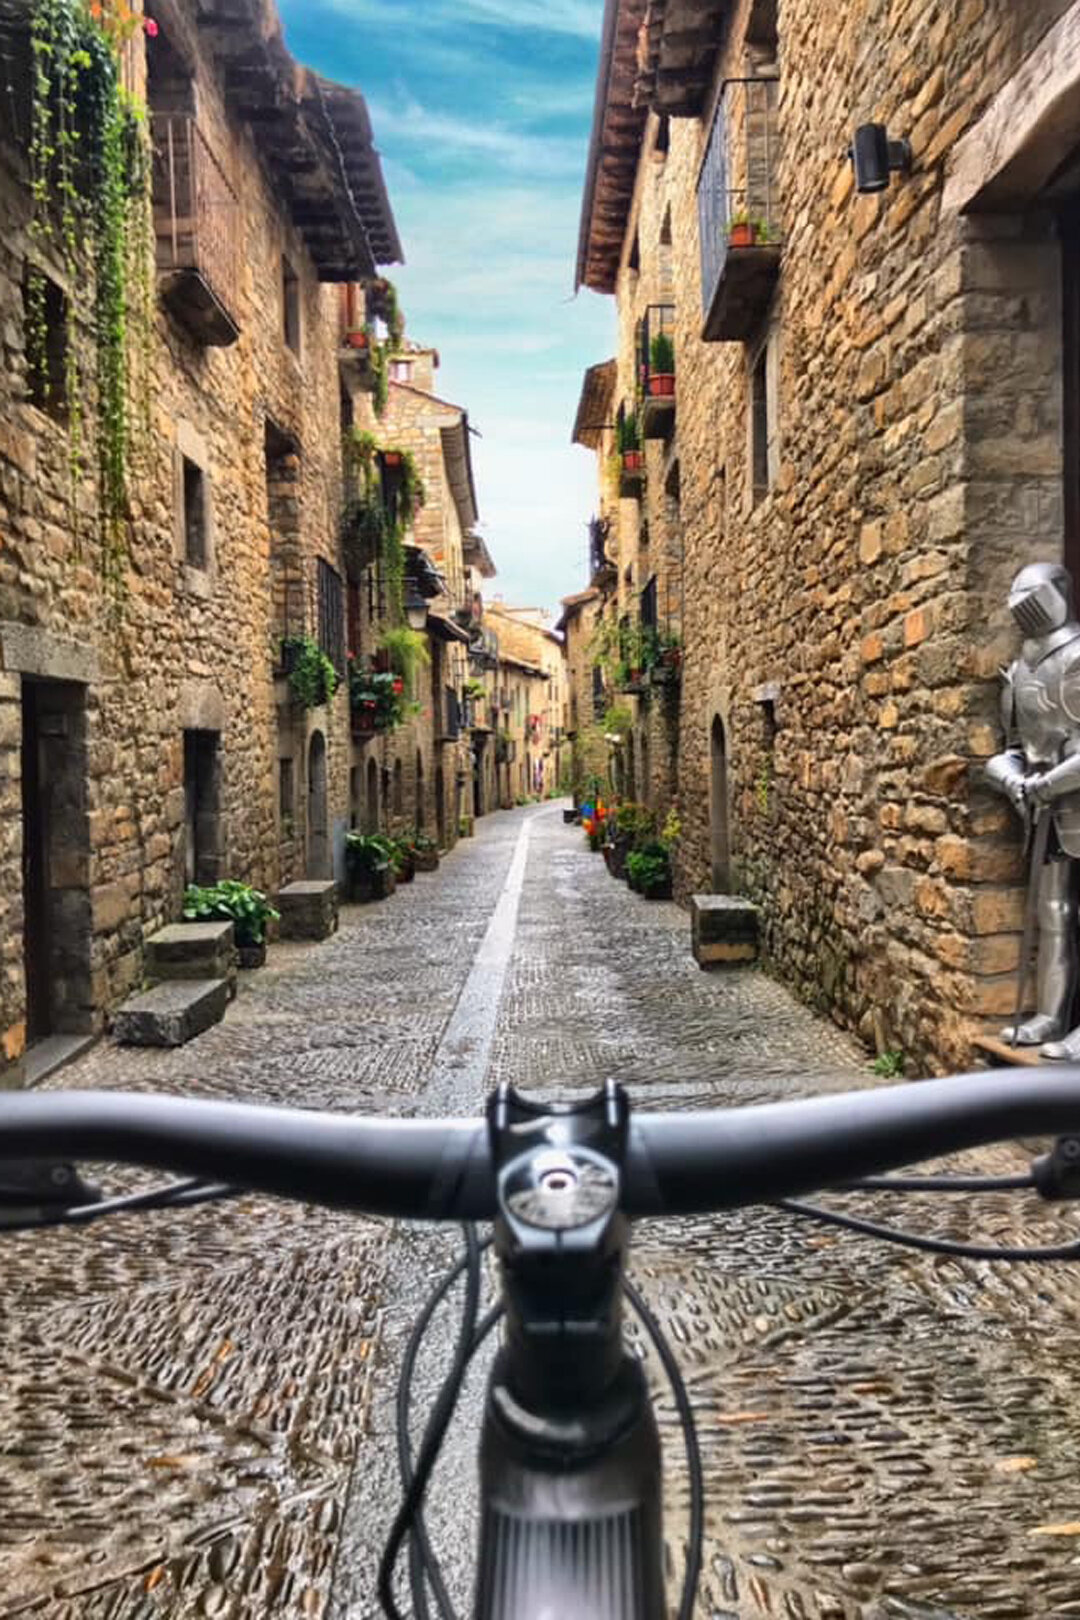 unbeaten-adventures-mountain-bike-guiding-ainsa-zona-zero-pyrenees-spain-enduro-medieval-old-town.jpg